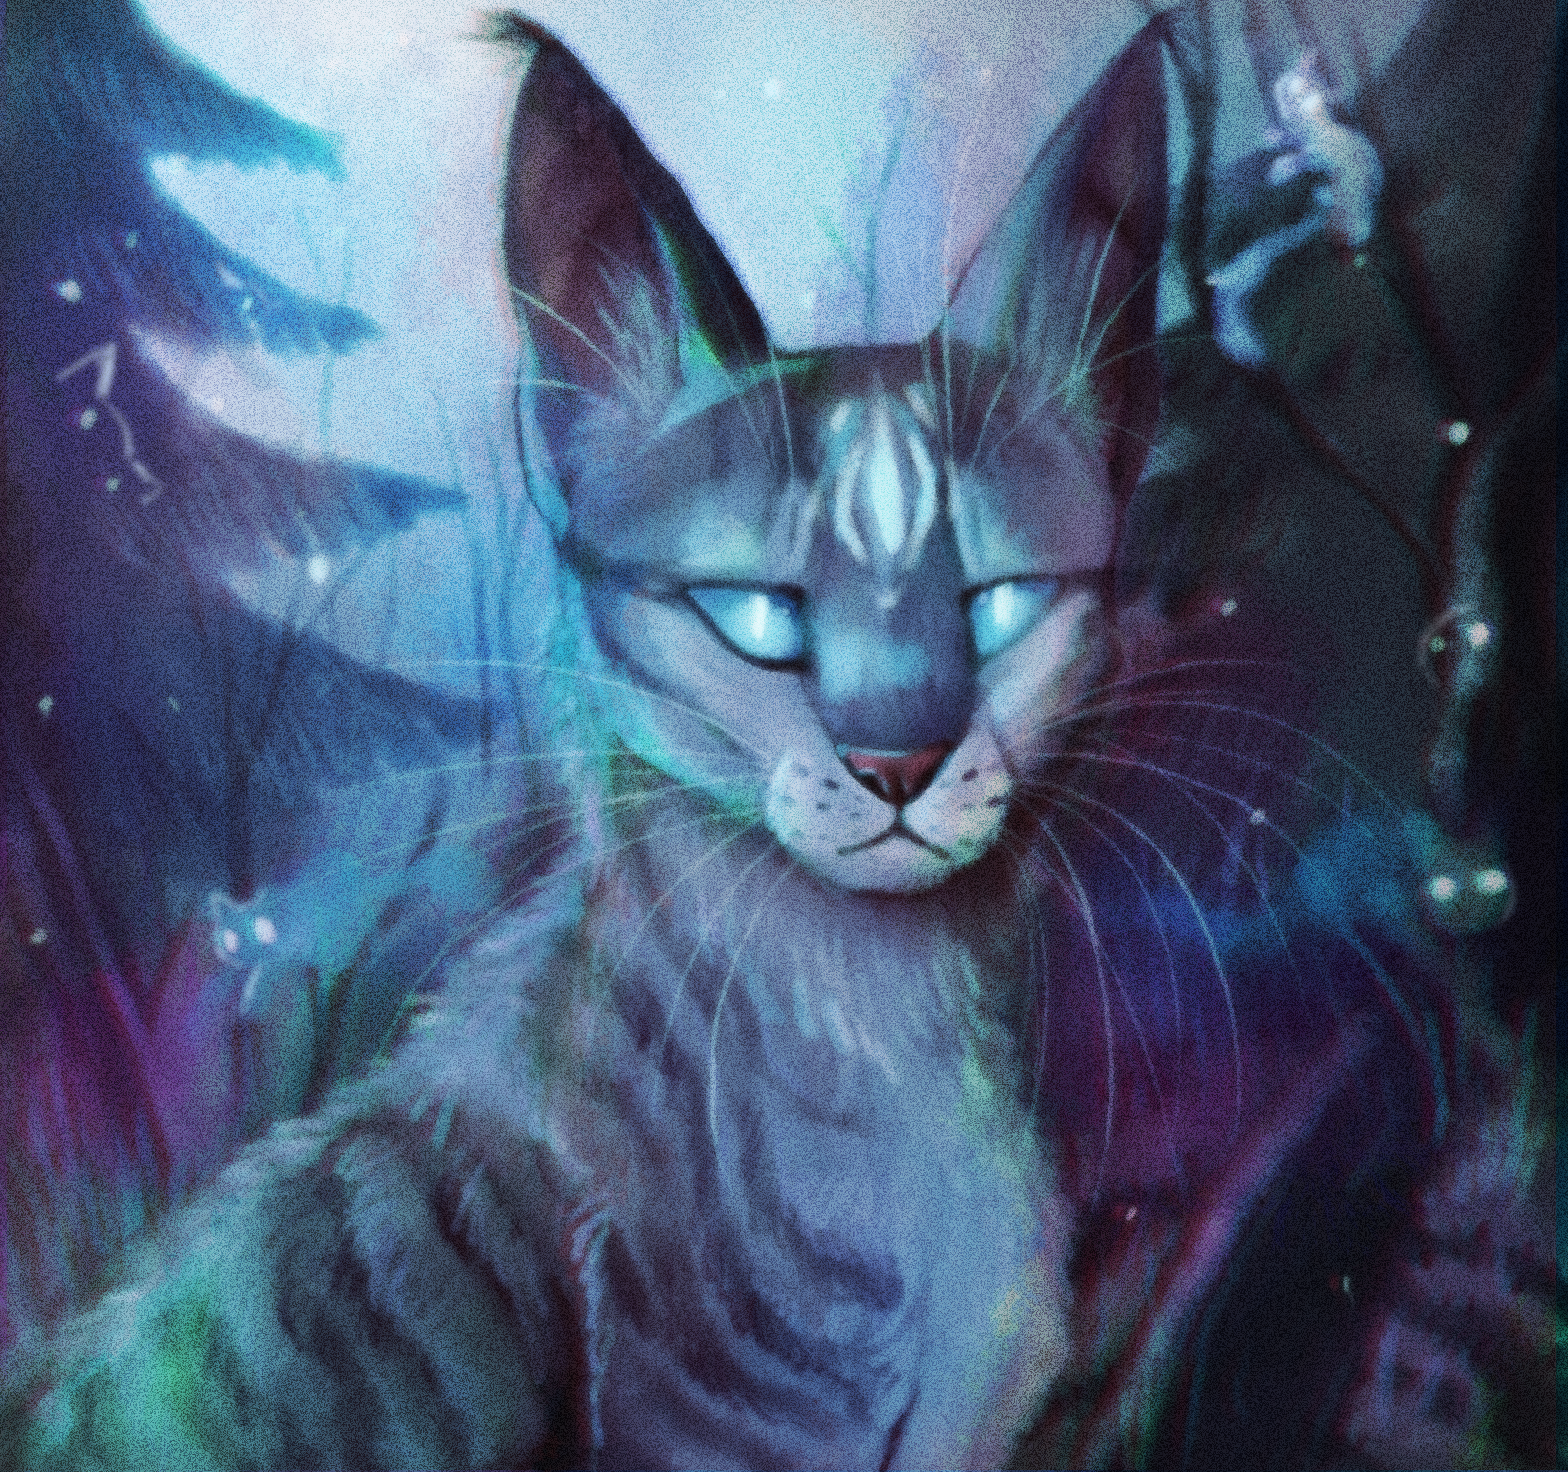 Warrior Jayfeather AU by paintedpaw-cat on DeviantArt